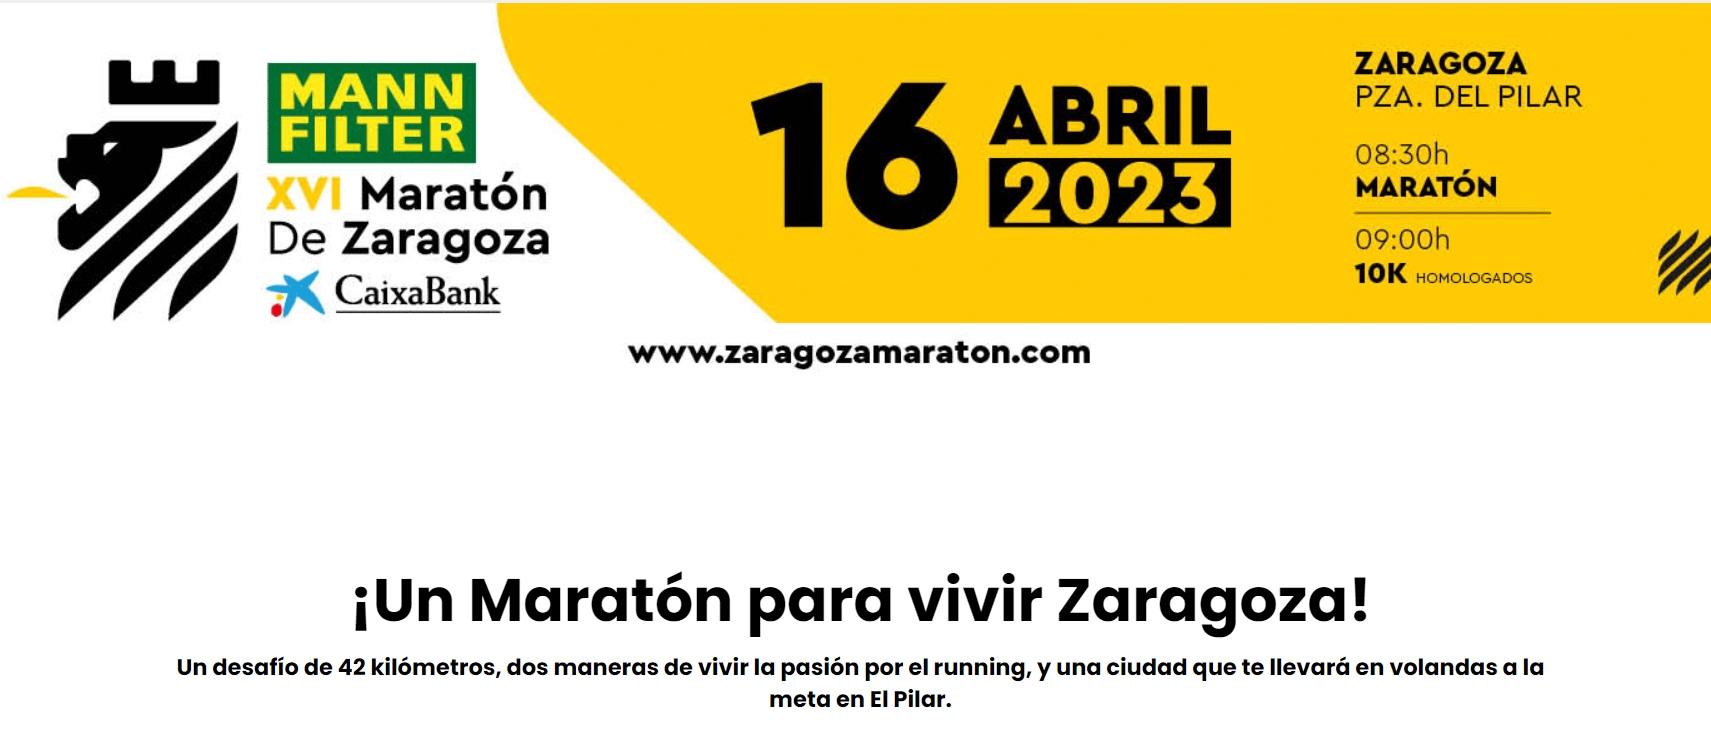 ALOJAMIENTO OFICIAL MARATÓN ZARAGOZA 2023 - Inscríbete